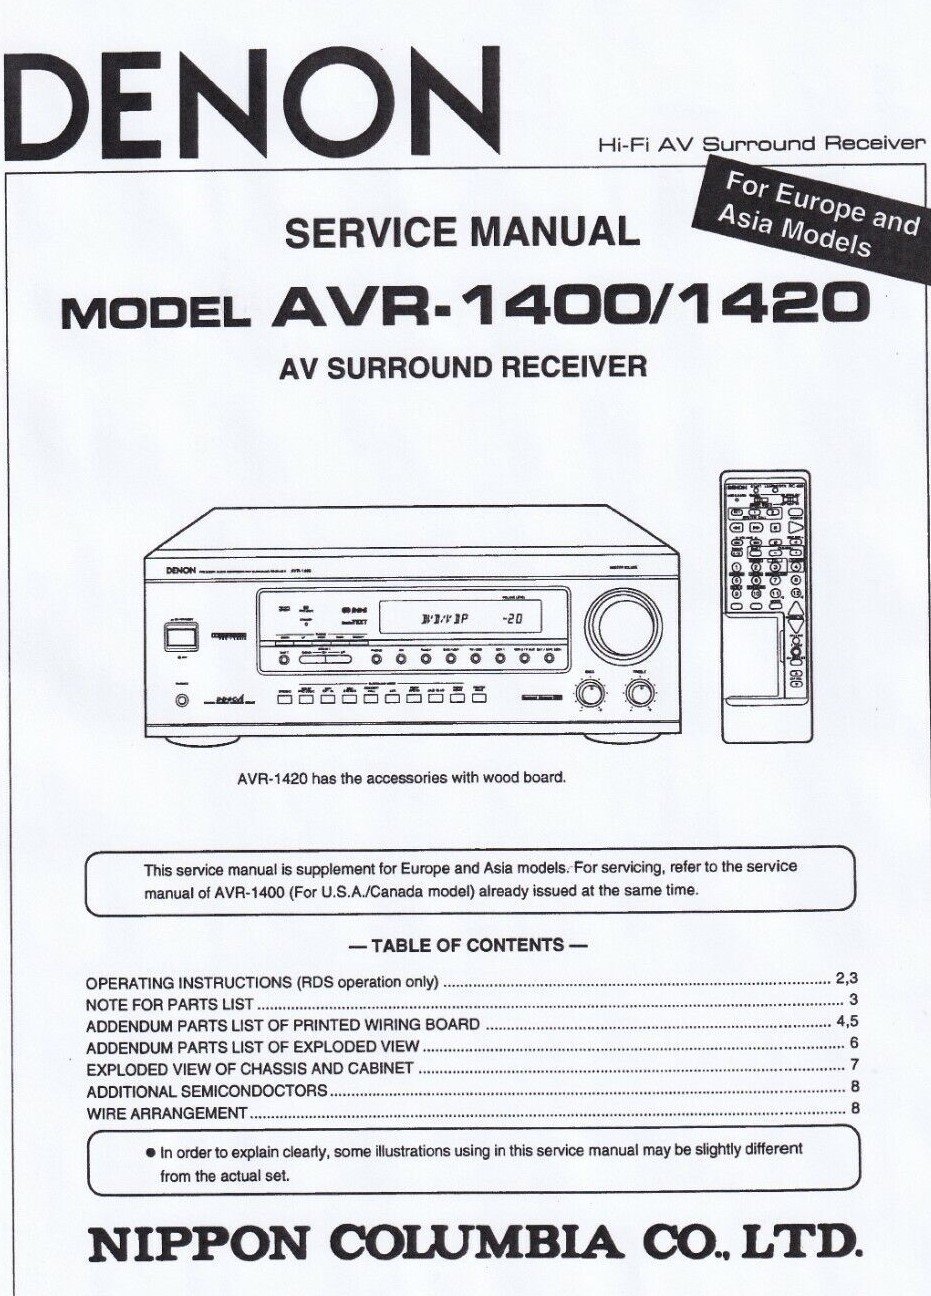 Denon AVR-1400 Receiver Service Manual PDF